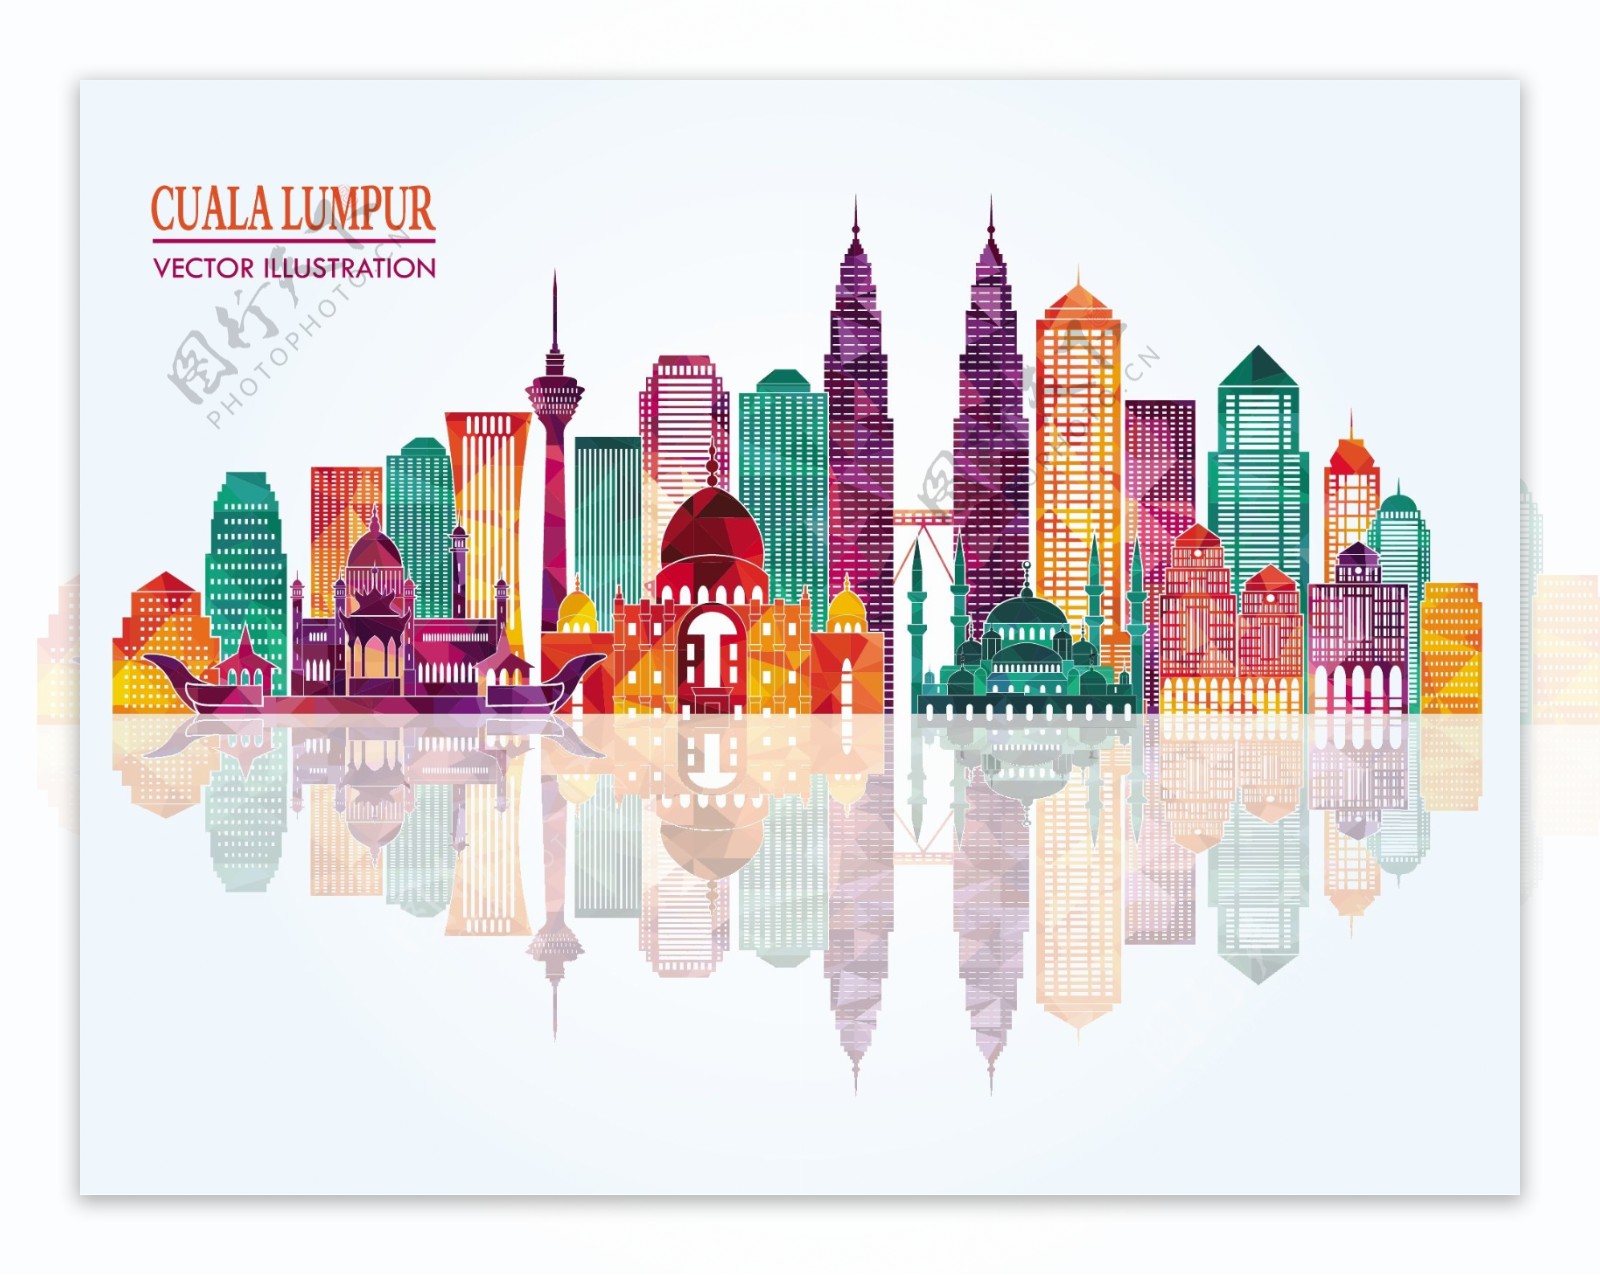 吉隆坡城市彩色模块剪影图